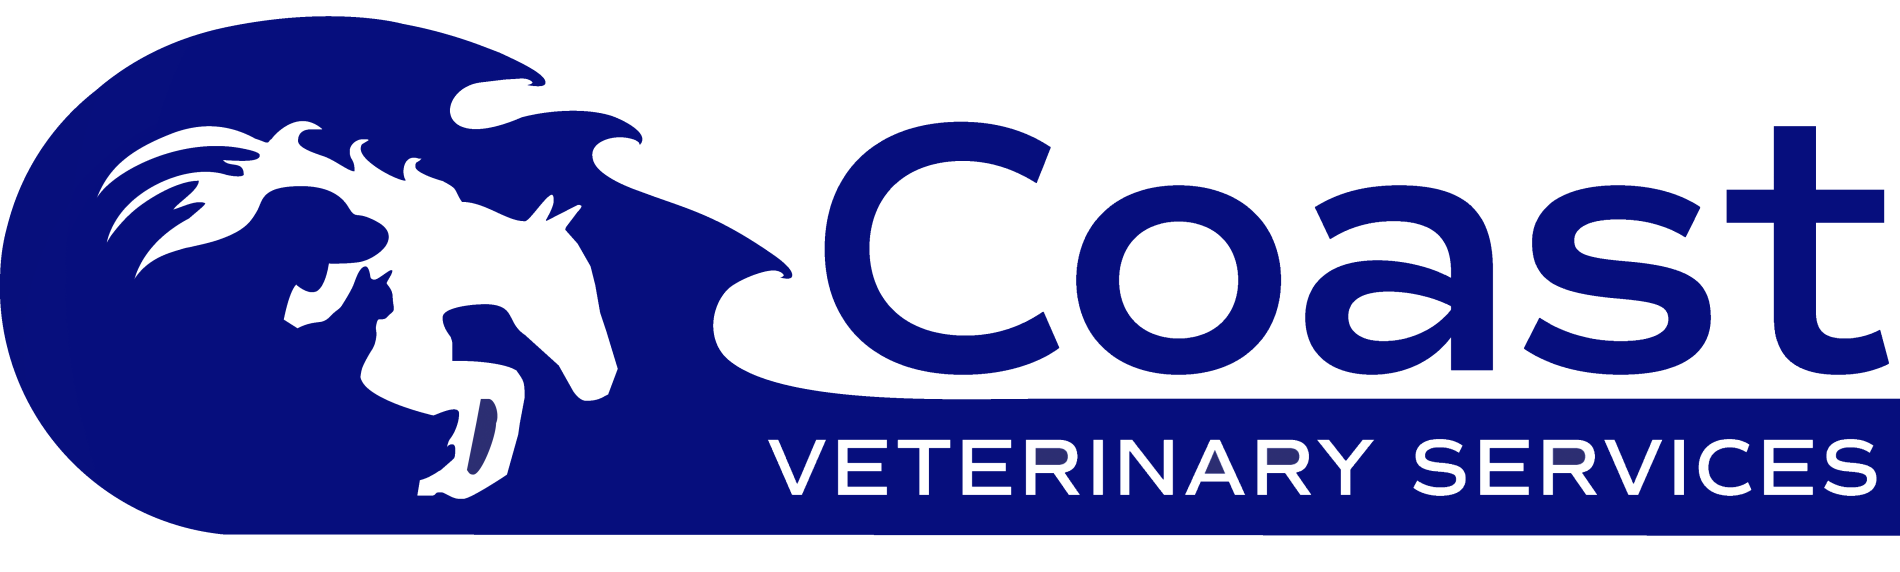 Coast Veterinary Services Logo